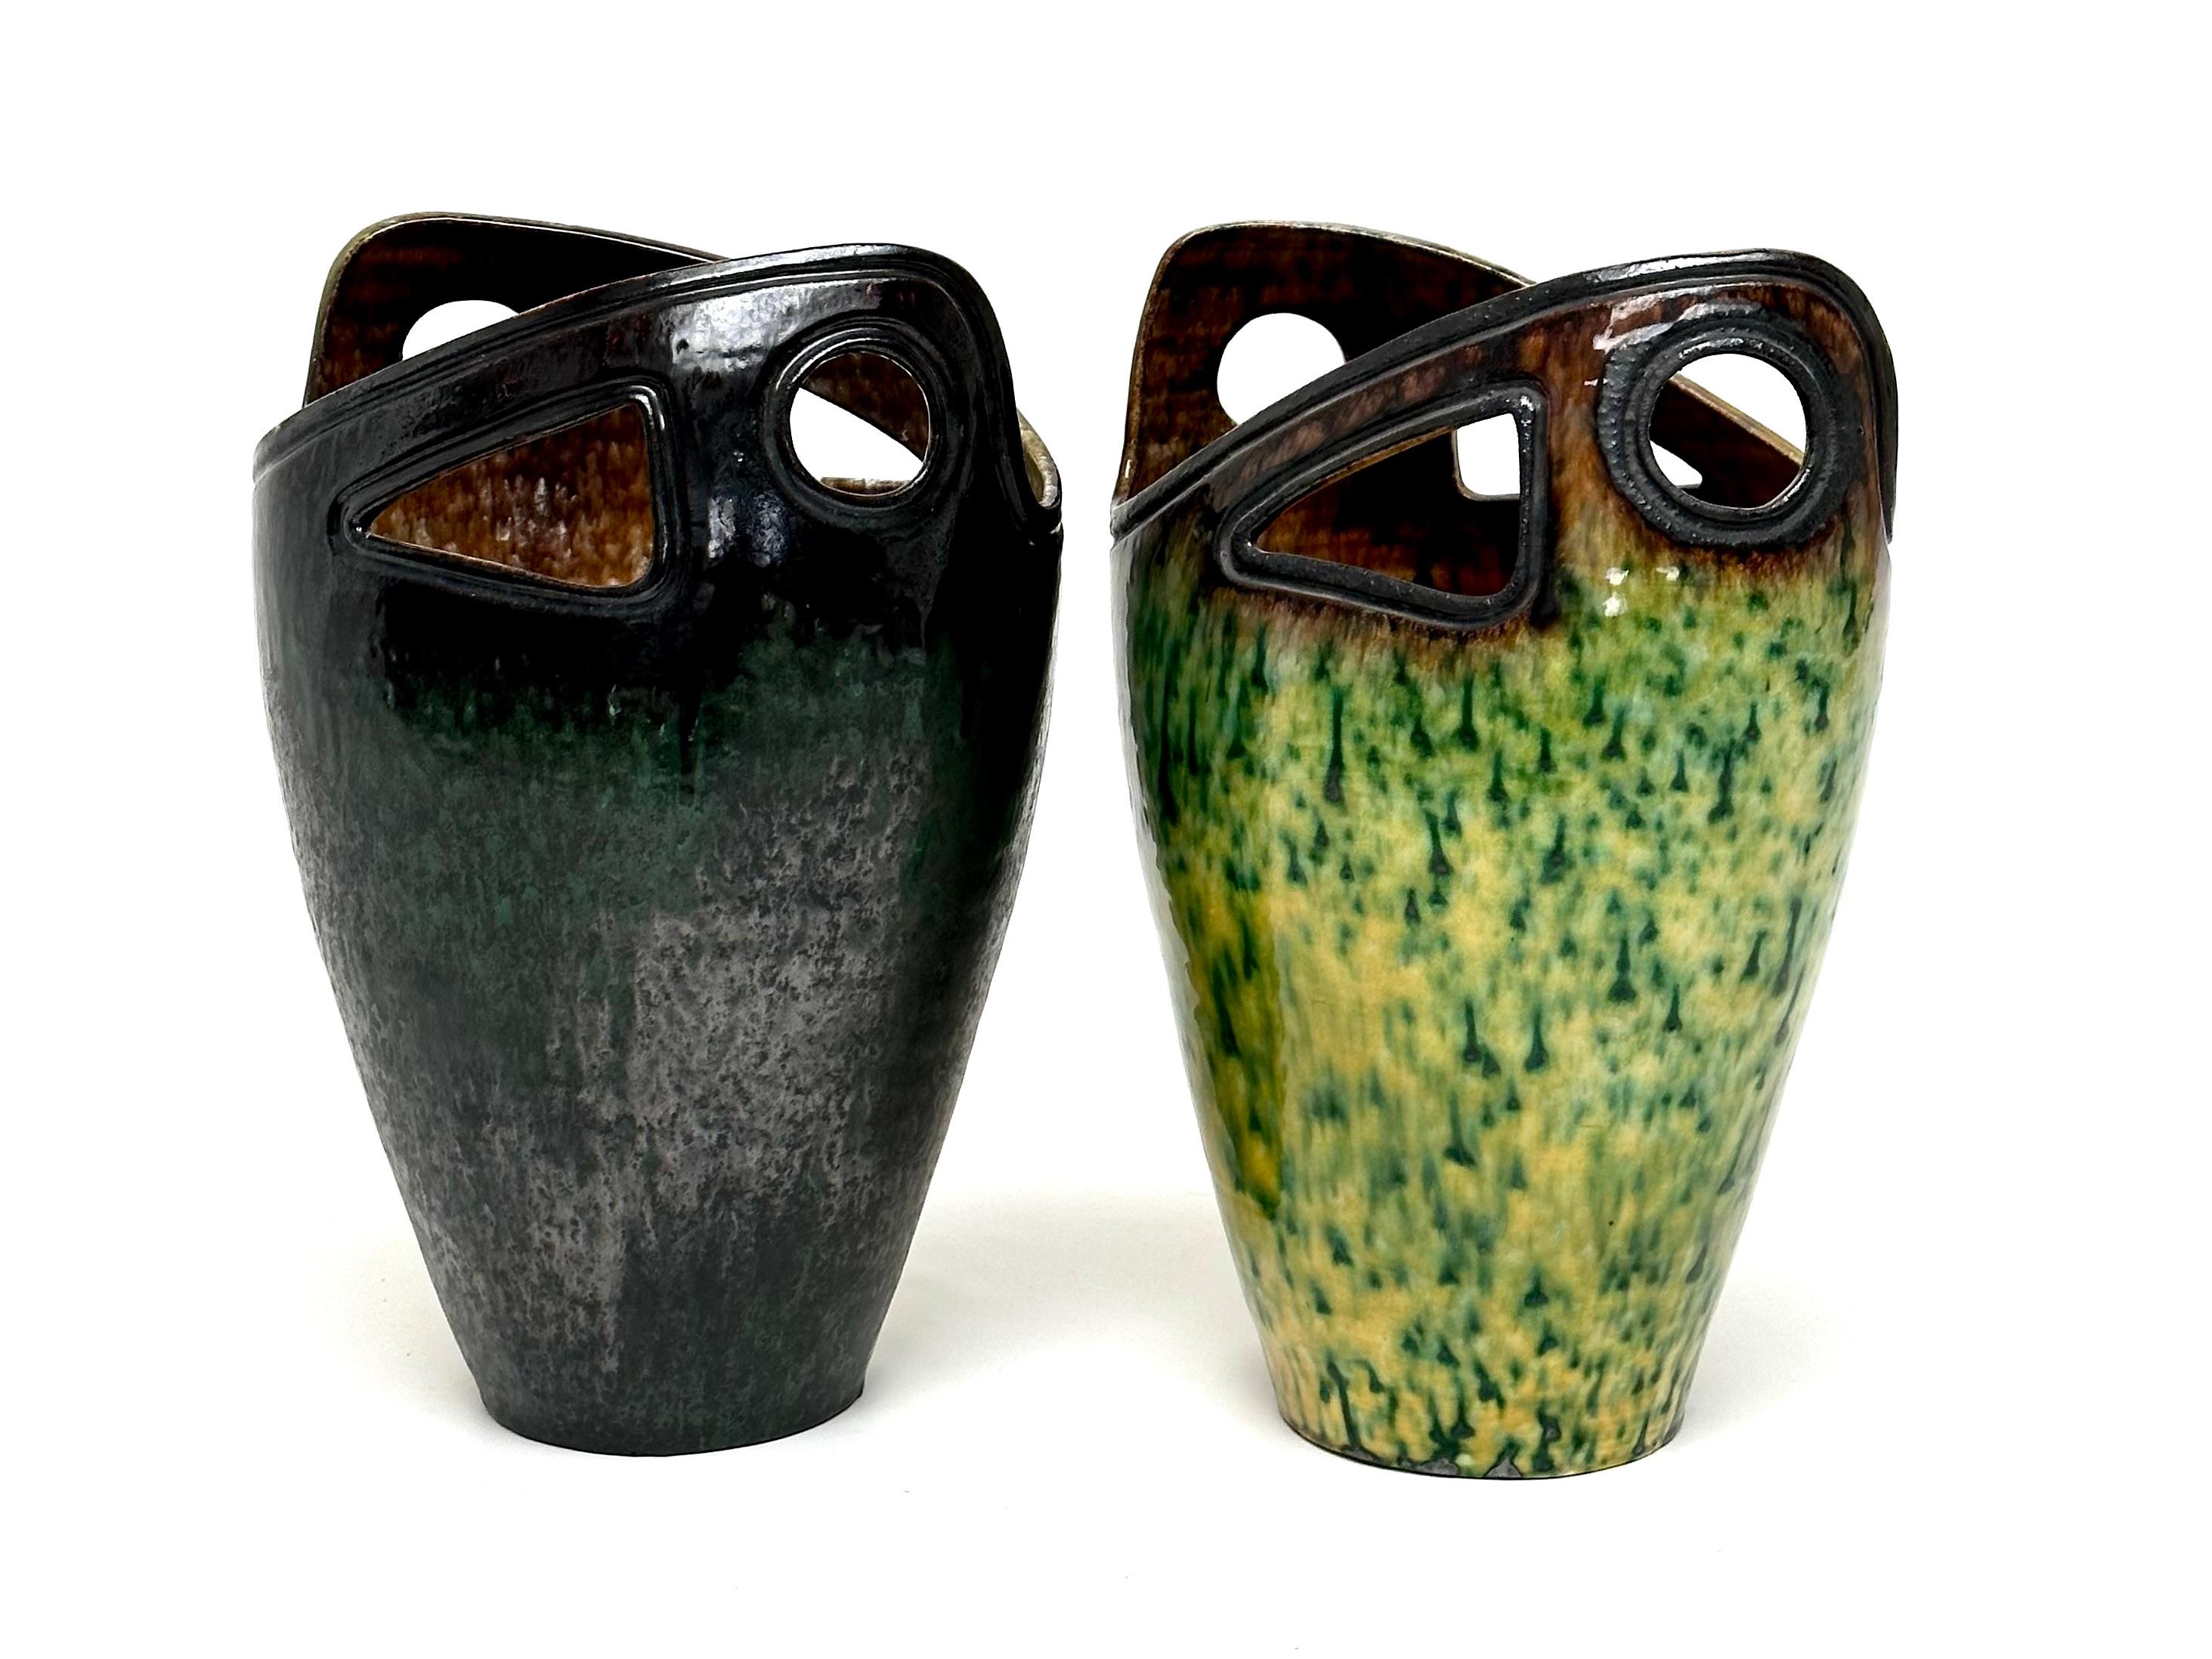 Zwei große, frei geformte Vasen, die im oberen Teil bearbeitet sind.
Eine schöne Balance zwischen einer klassischen Basis und einer Übertreibung der für die 50er Jahre typischen Formen.

Jedes Stück trägt die vollständige Signatur von Accolay, die